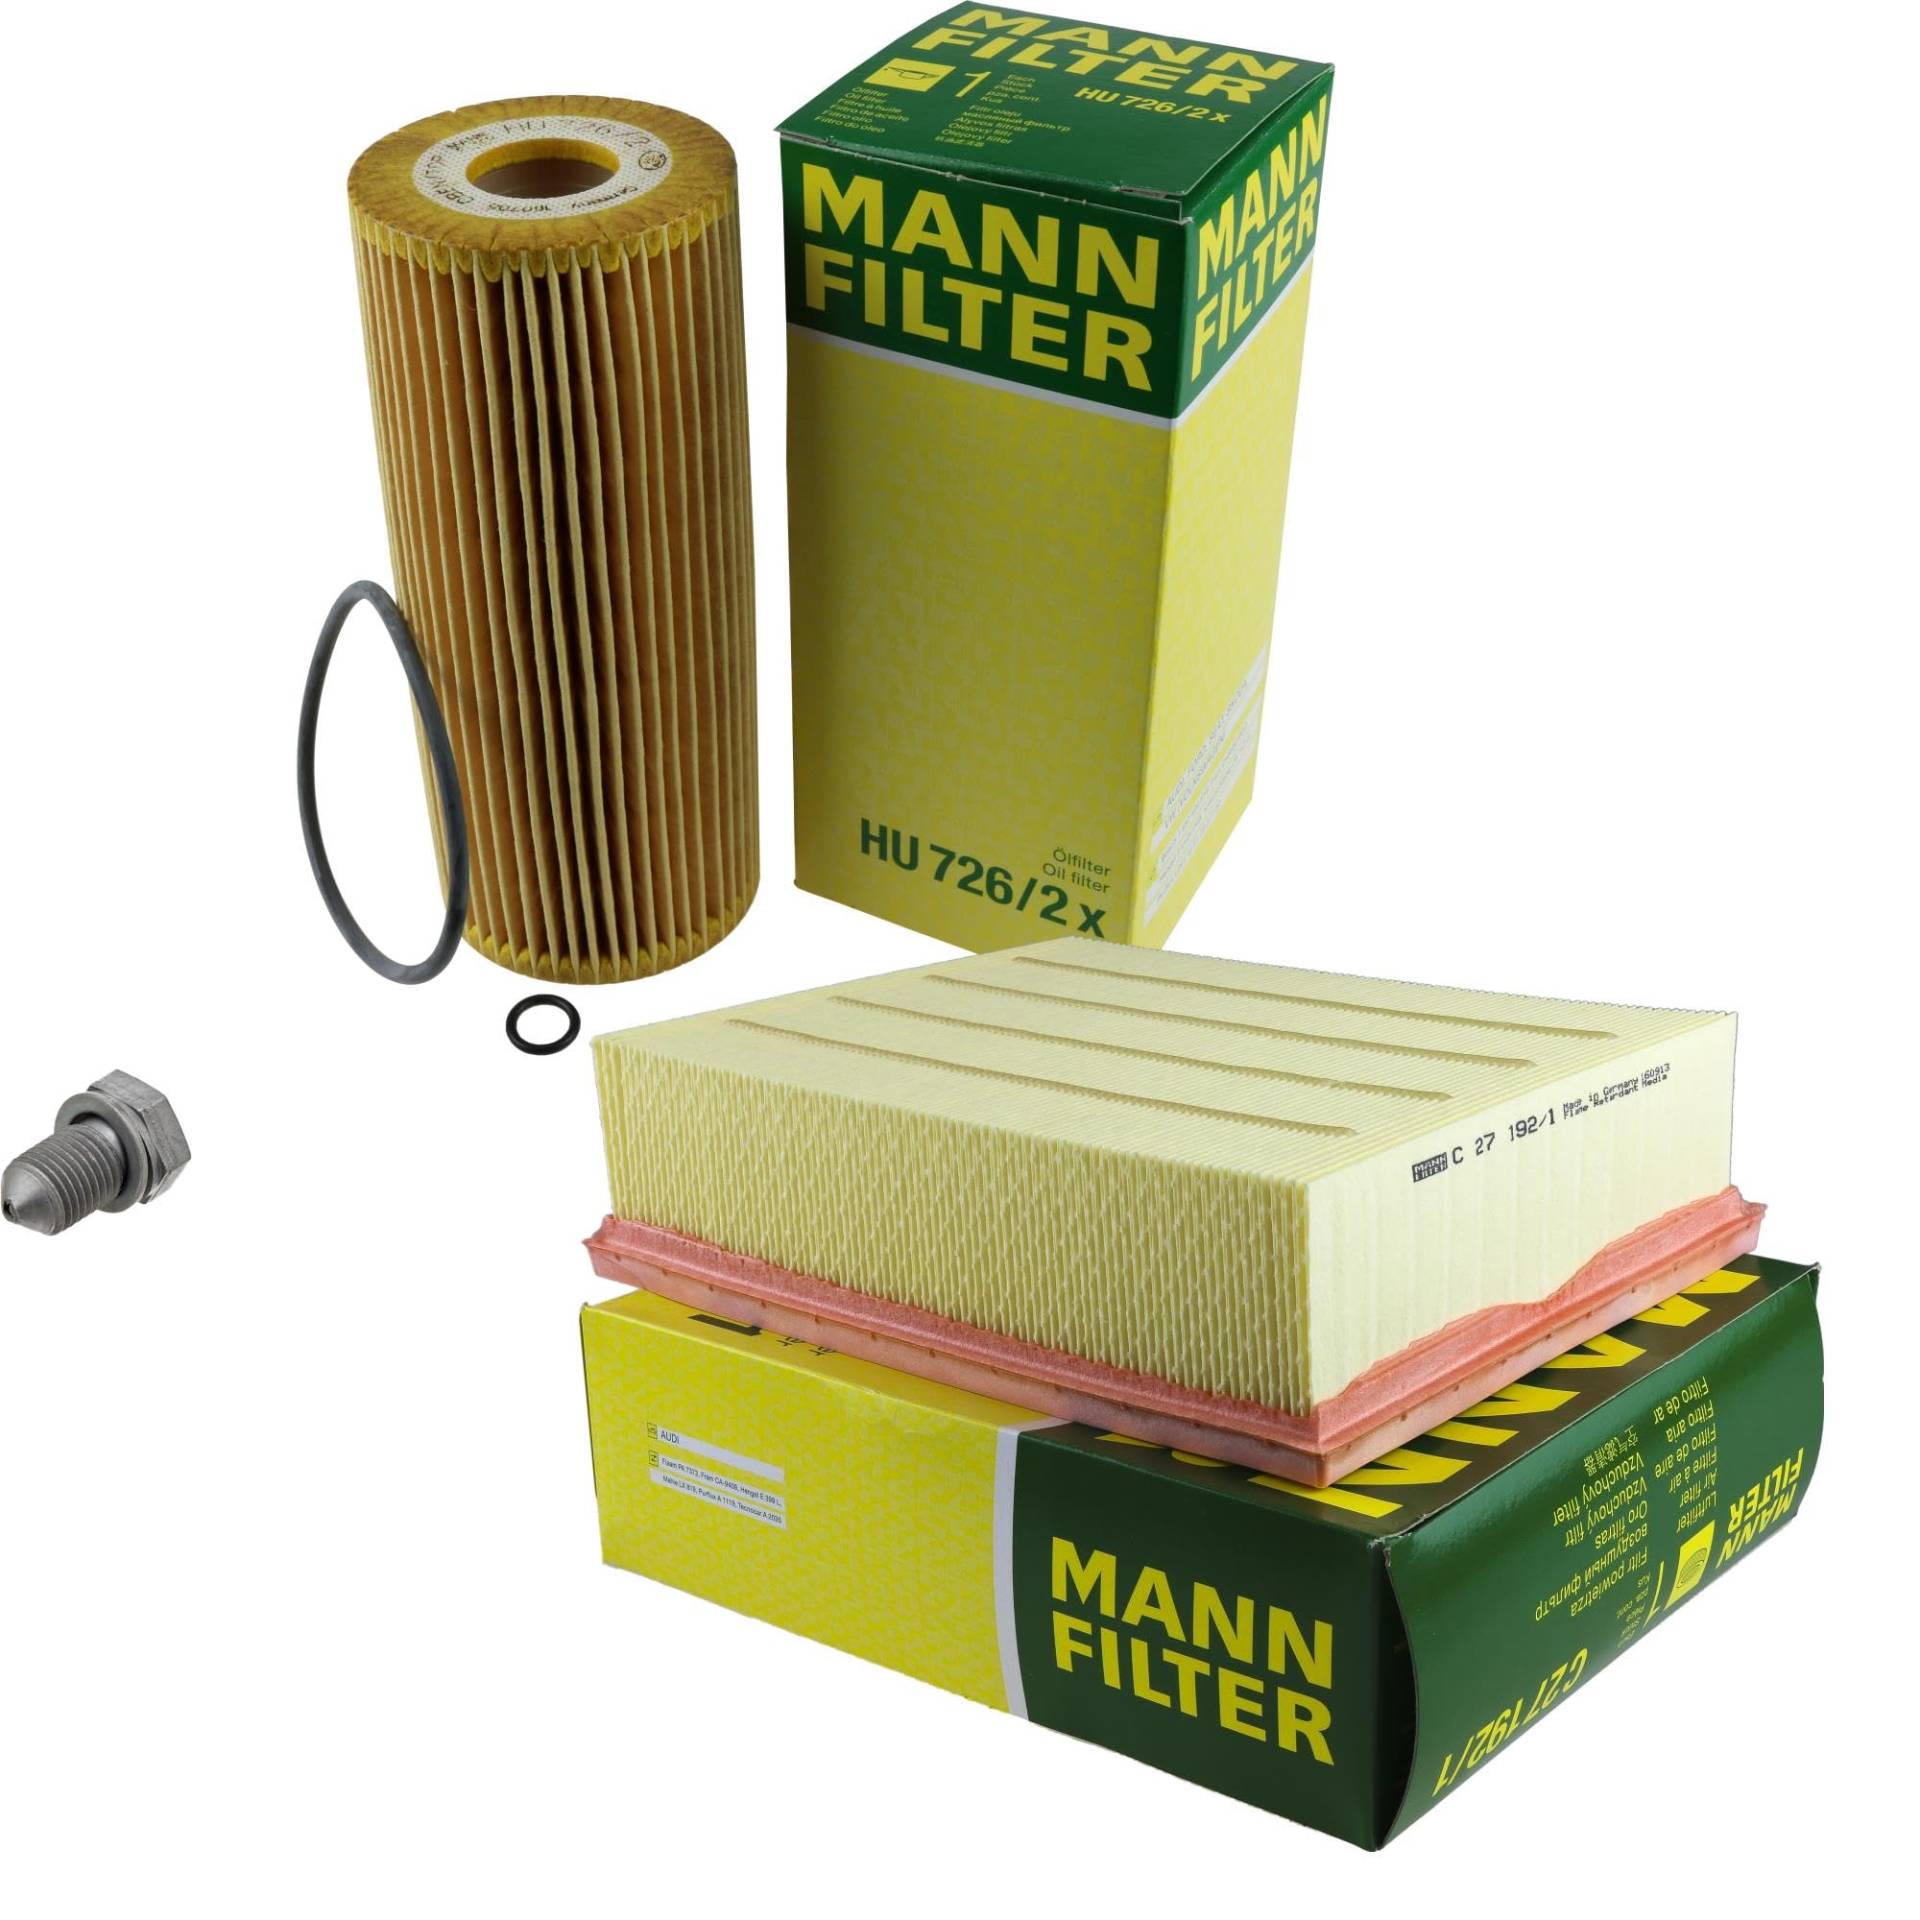 EISENFELS Filter Set Inspektionspaket erstellt mit MANN-FILTER Ölfilter HU 726/2 x, Luftfilter C 27 192/1, Verschlussschraube von EISENFELS